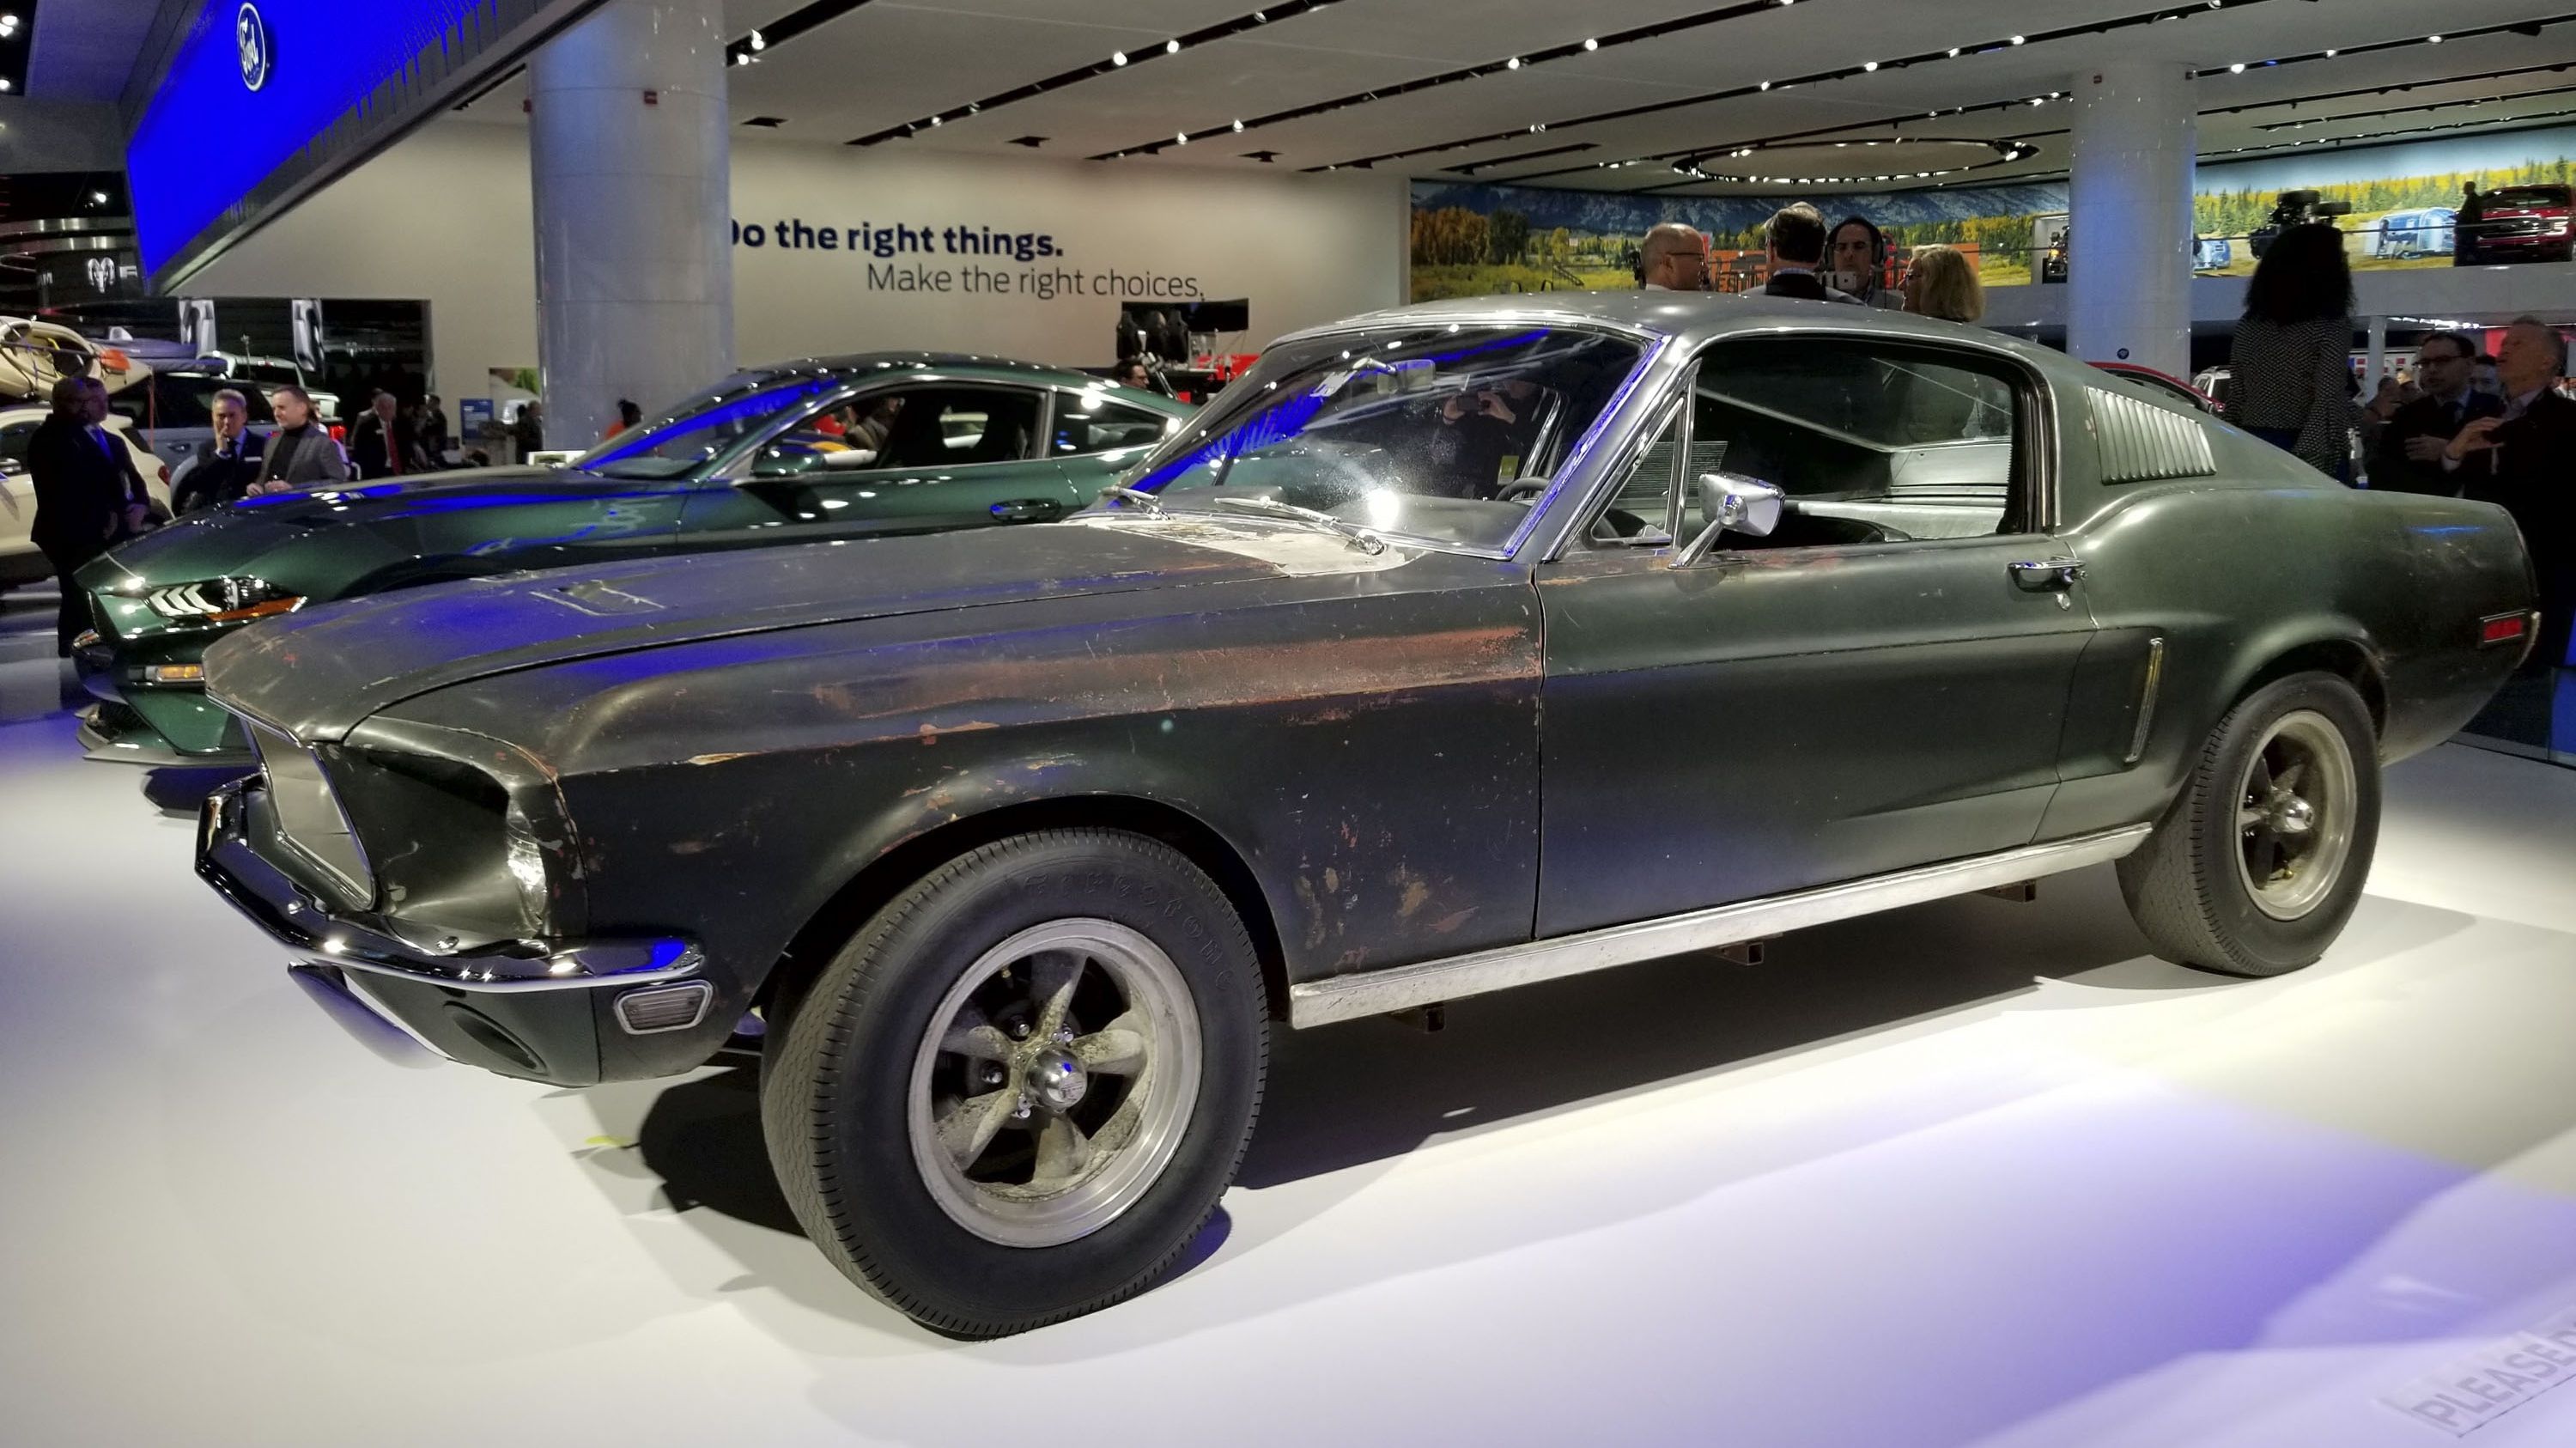 The original 1968 Ford Mustang Bulitt